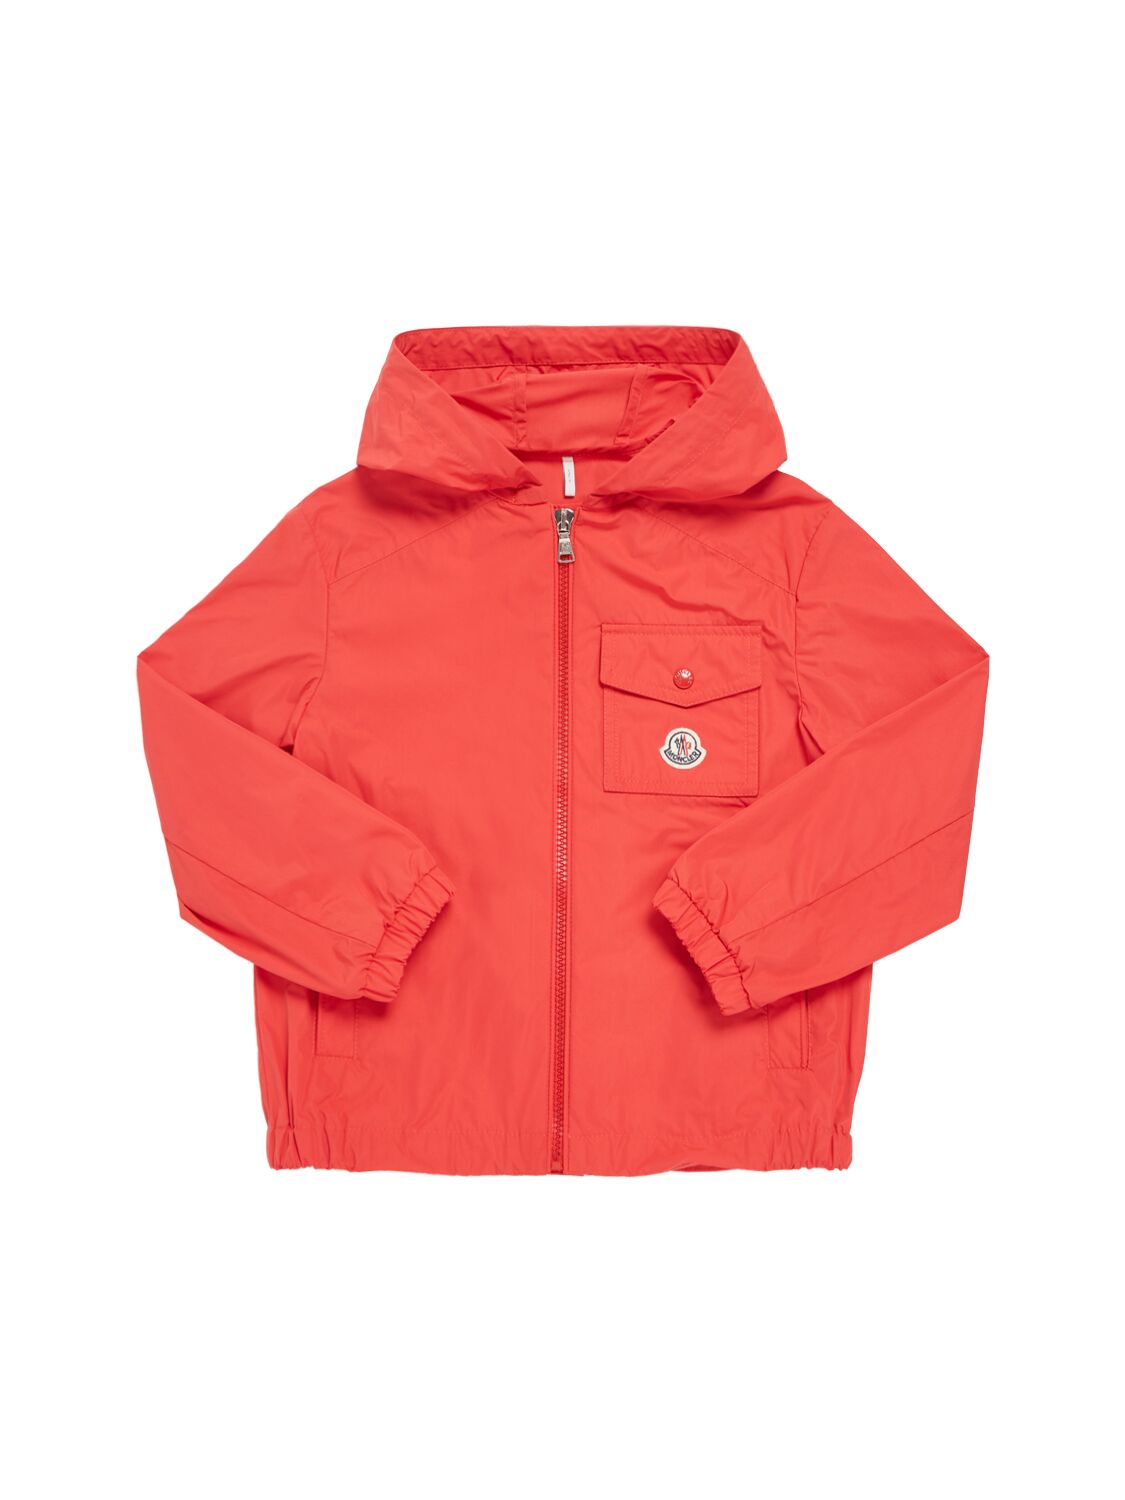 Moncler Kids' Ebo Tech Rainwear Jacket In Red